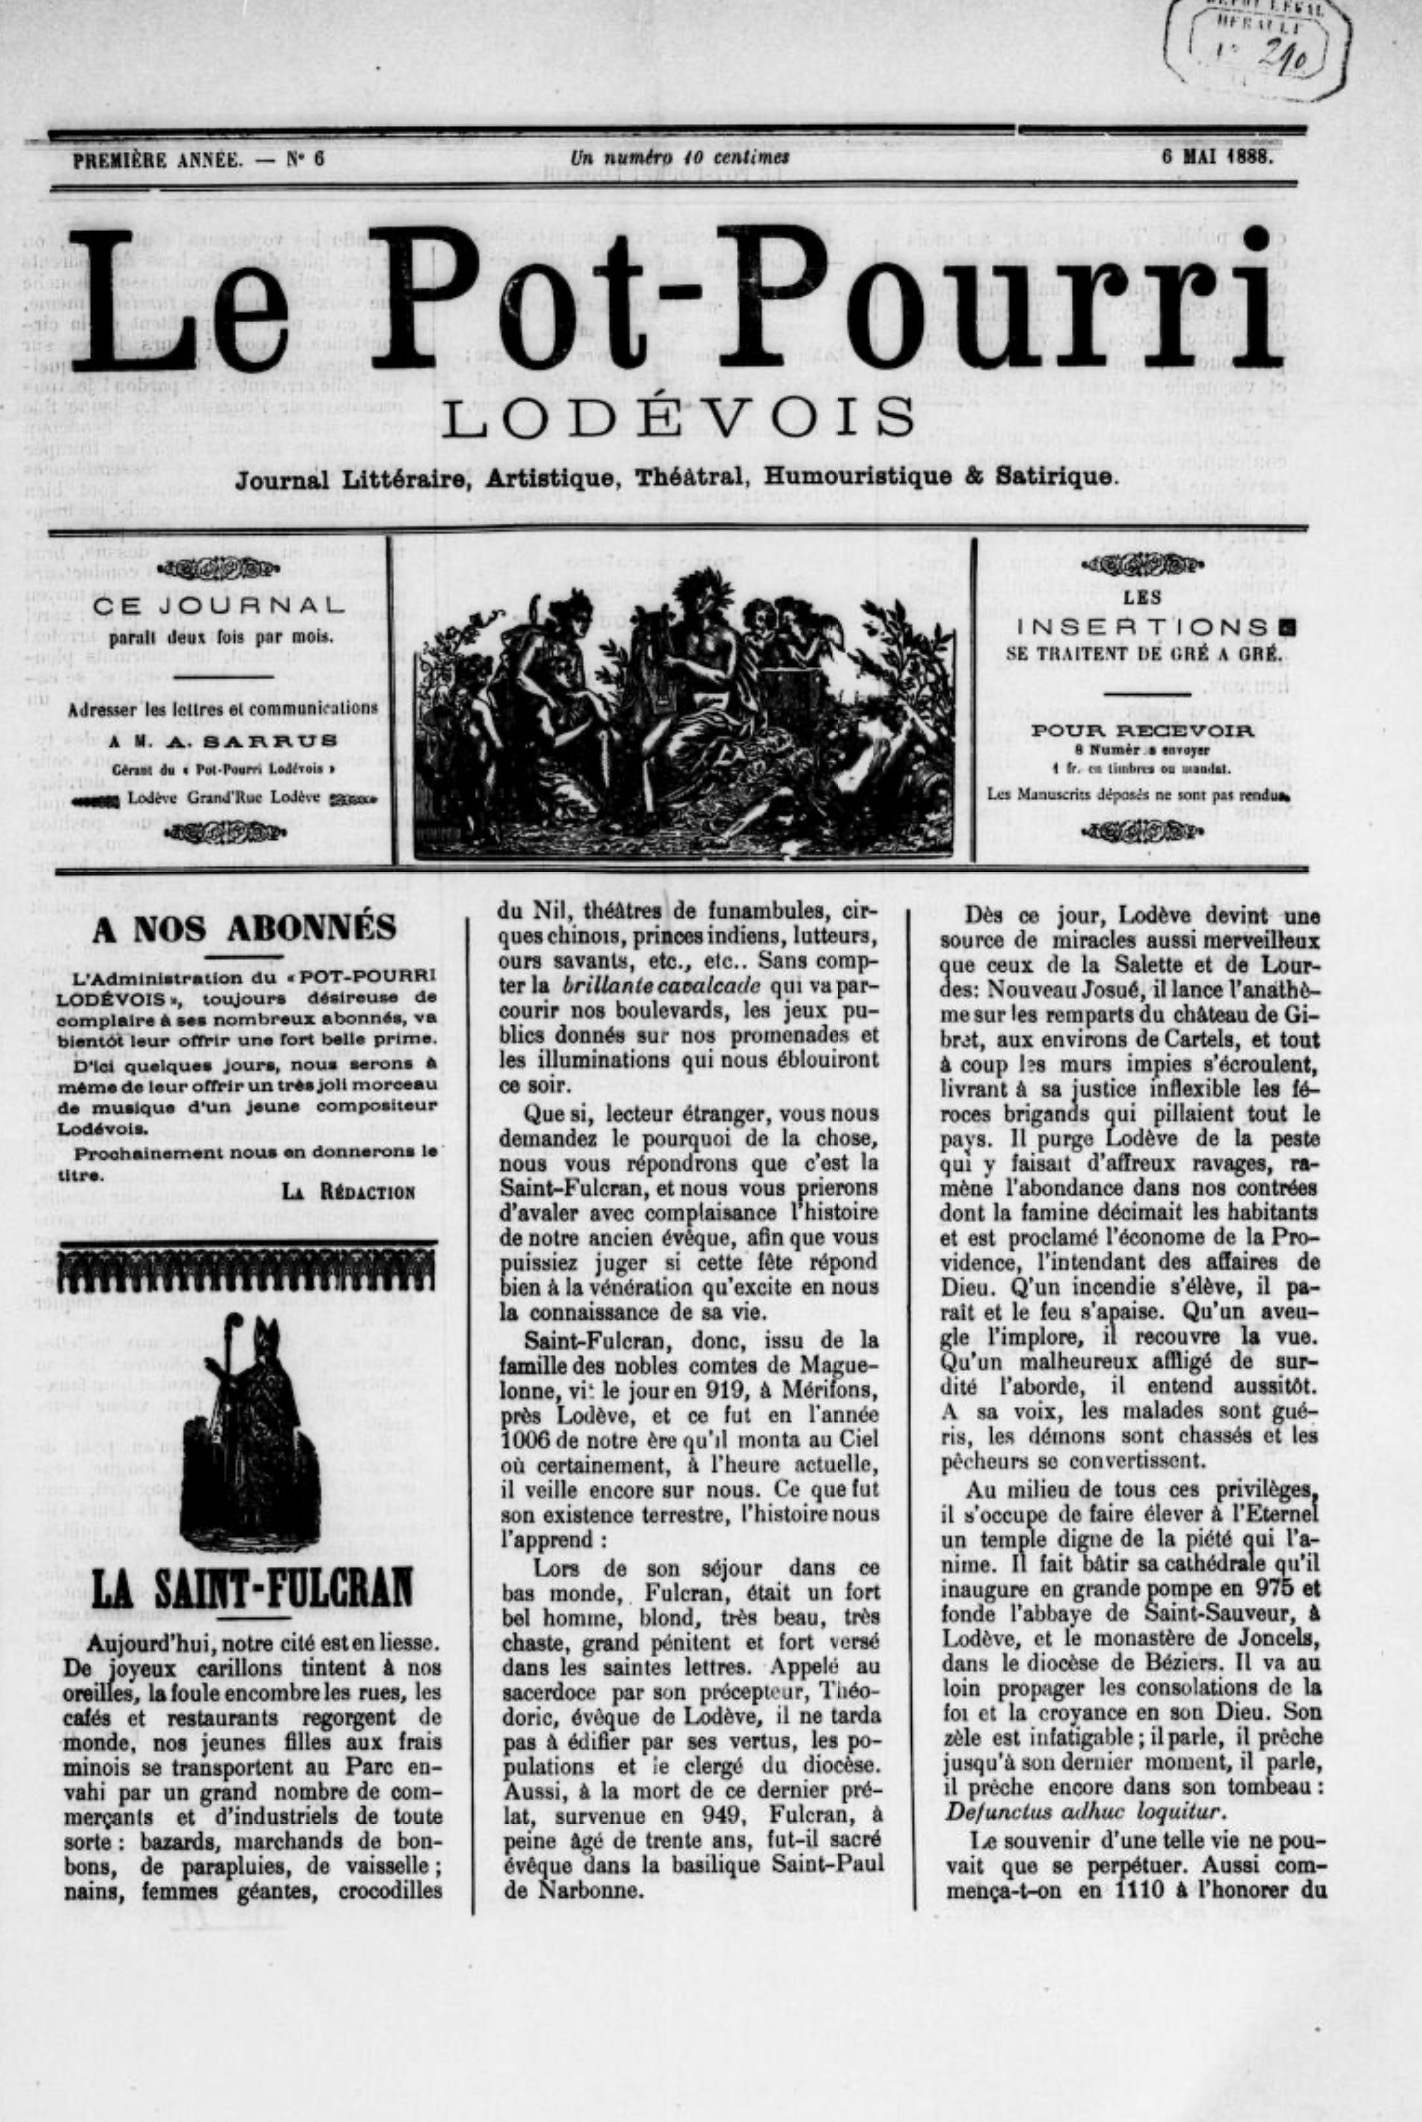 Les Lettres françaises  RetroNews - Le site de presse de la BnF